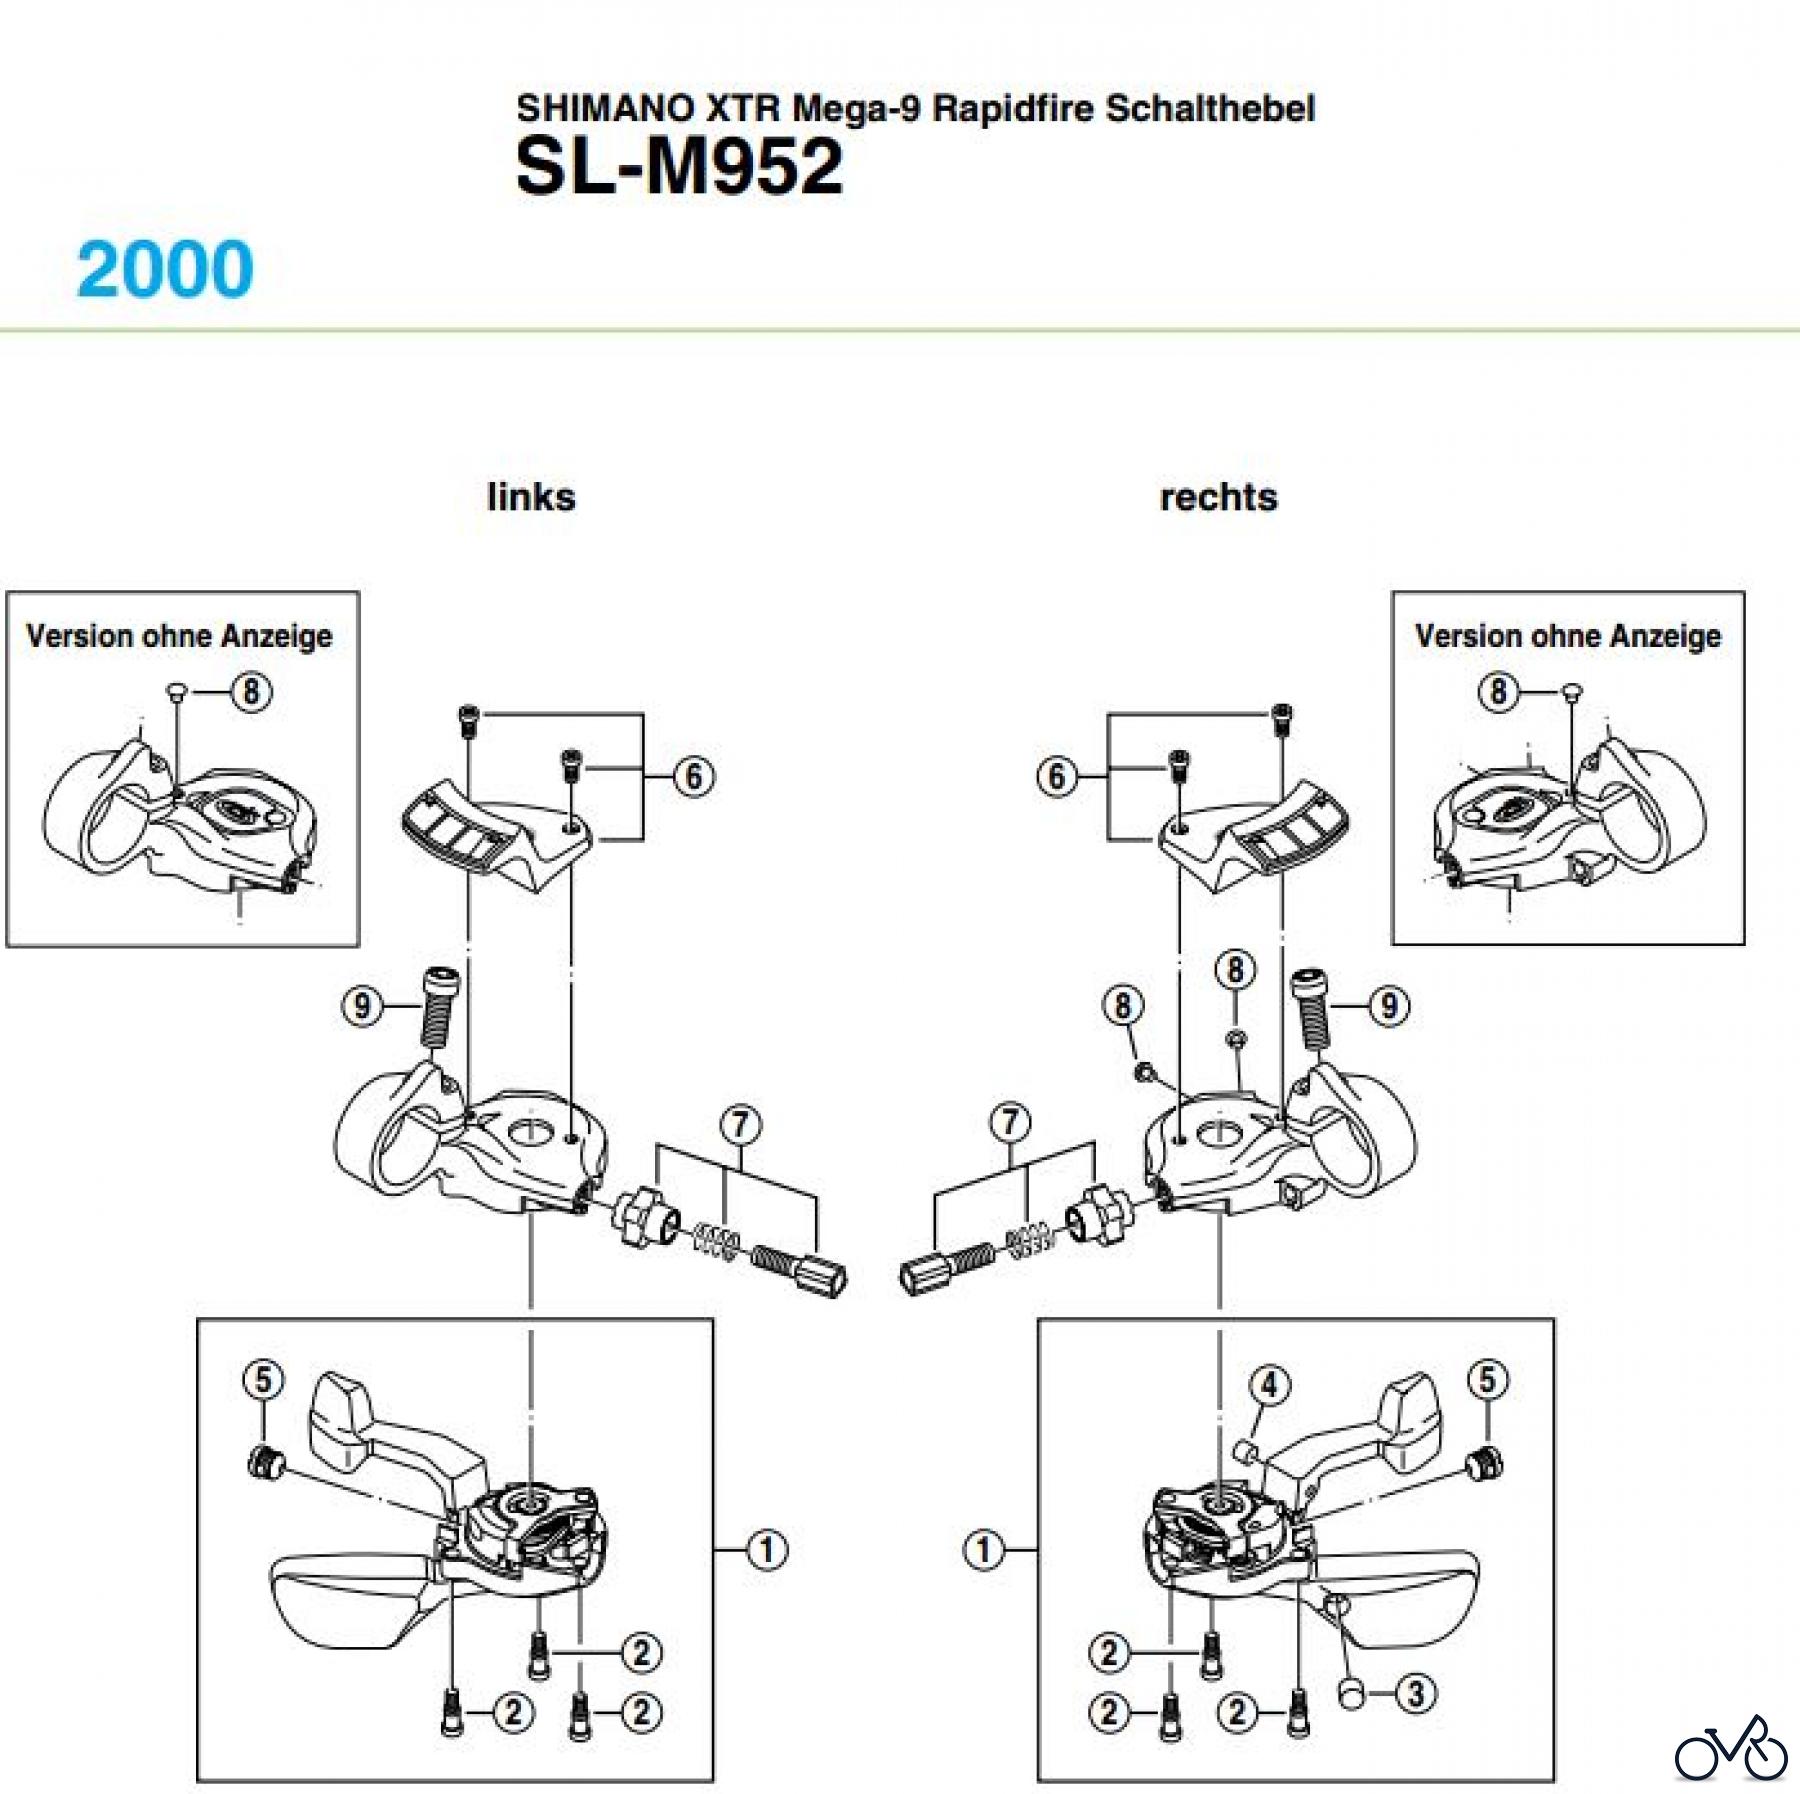  Shimano SL Shift Lever - Schalthebel SL-M952, 2002 SHIMANO XTR Mega-9 Rapidfire Schalthebel